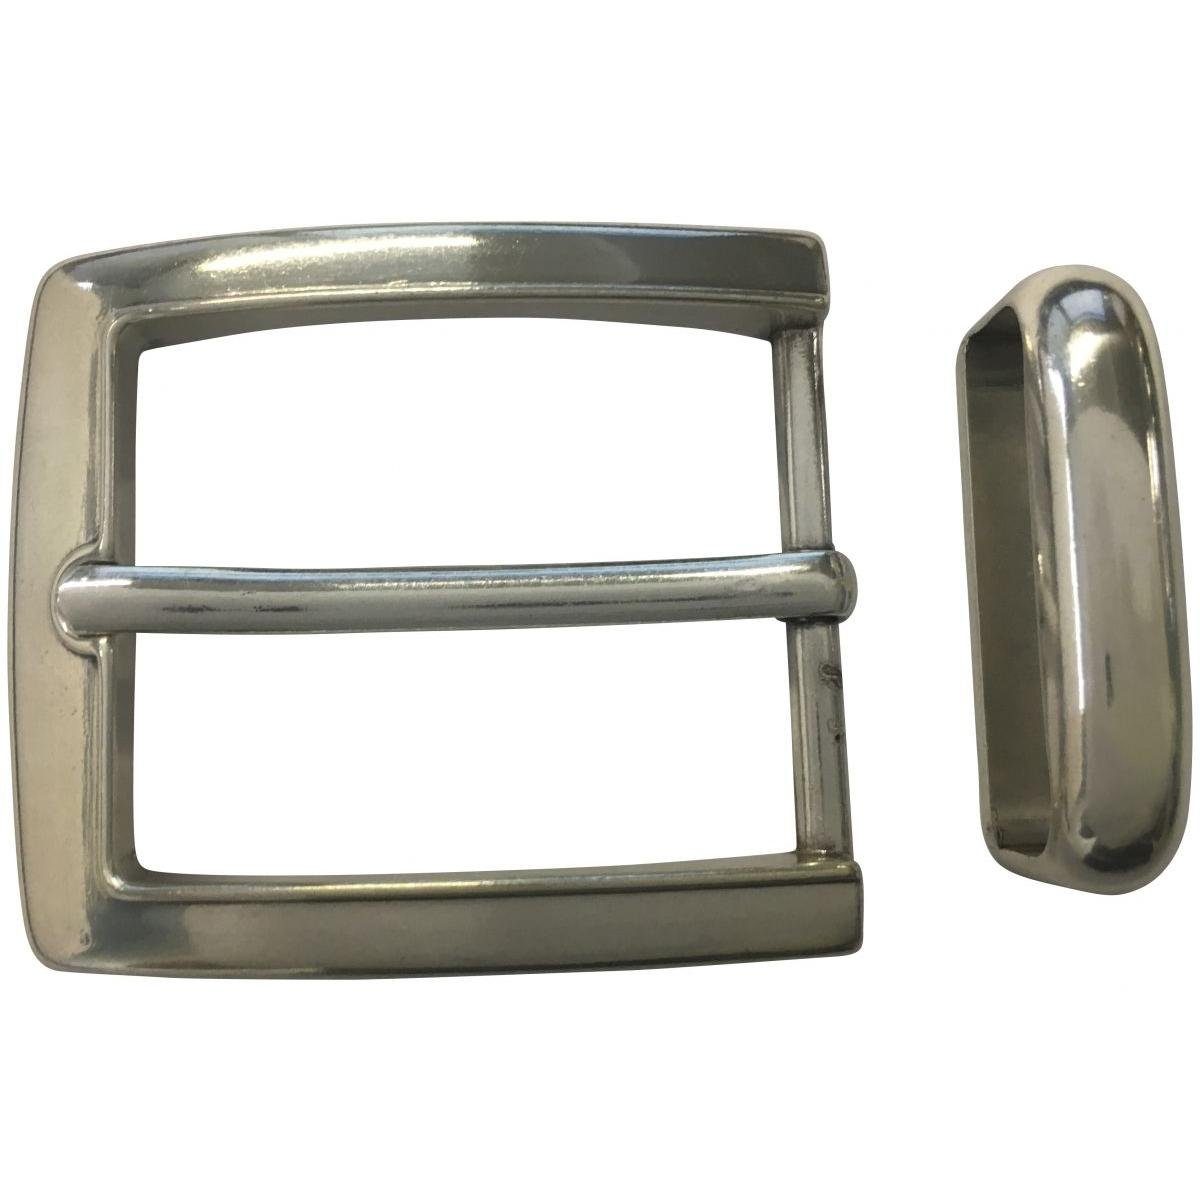 BELTINGER Gürtelschnalle mit Schlaufe 4,0 cm - Buckle Gürtelschließe 40mm - Dorn-Schließe - Gür Silber | Gürtelschnallen